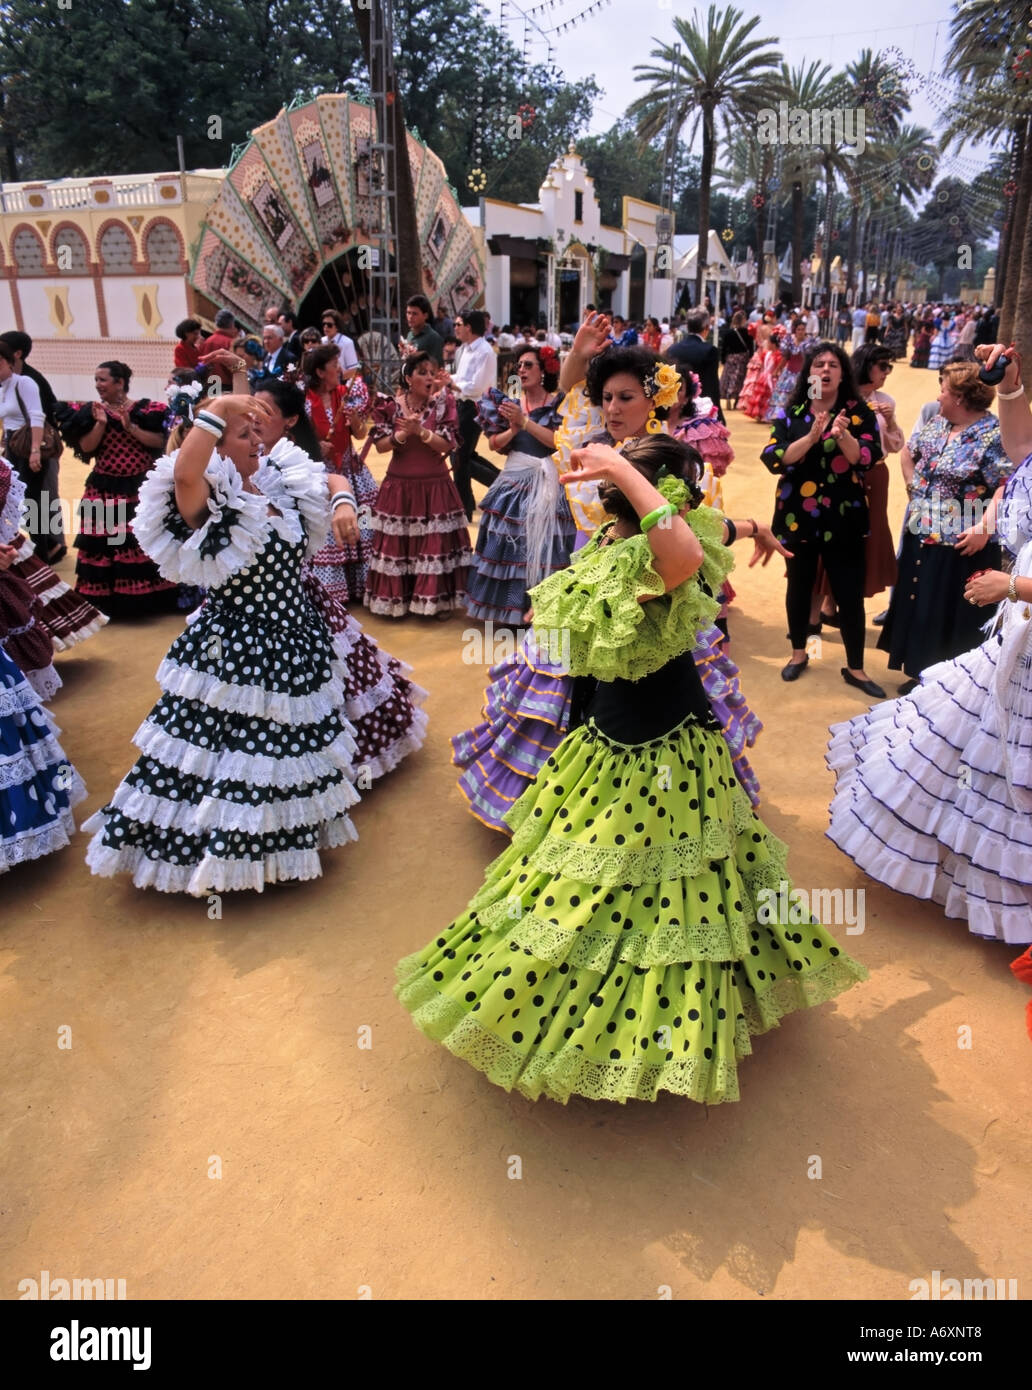 Pferdemesse Jerez, Feria del Caballo, Flamenco für Damen, die in Trajes de Gitanas (Zigeunerkleider), Jerez de la Frontera, Andalusien, Spanien getanzt werden Stockfoto